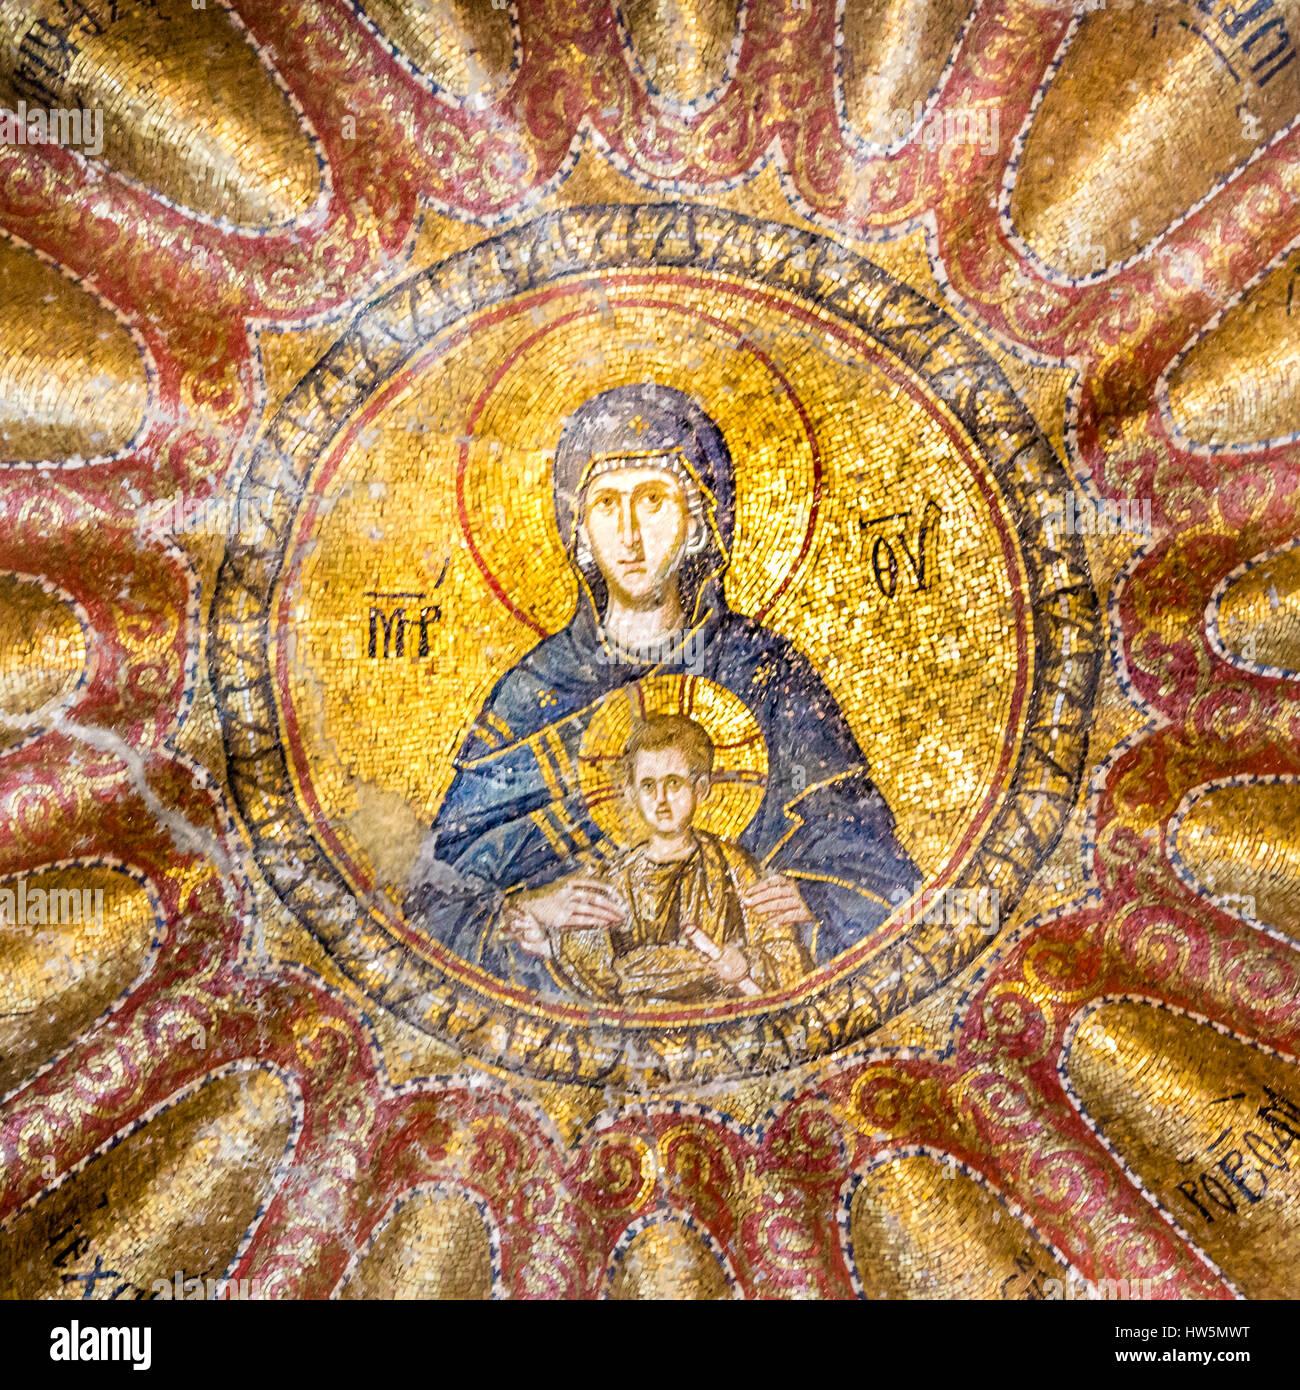 Virgen y el Niño Jesús. La Madre de Dios. Mosaico de la Iglesia de Chora, Estambul, 11 de oct de 2013, la Virgen de la Blachernitissa dentro de una mandorla Foto de stock